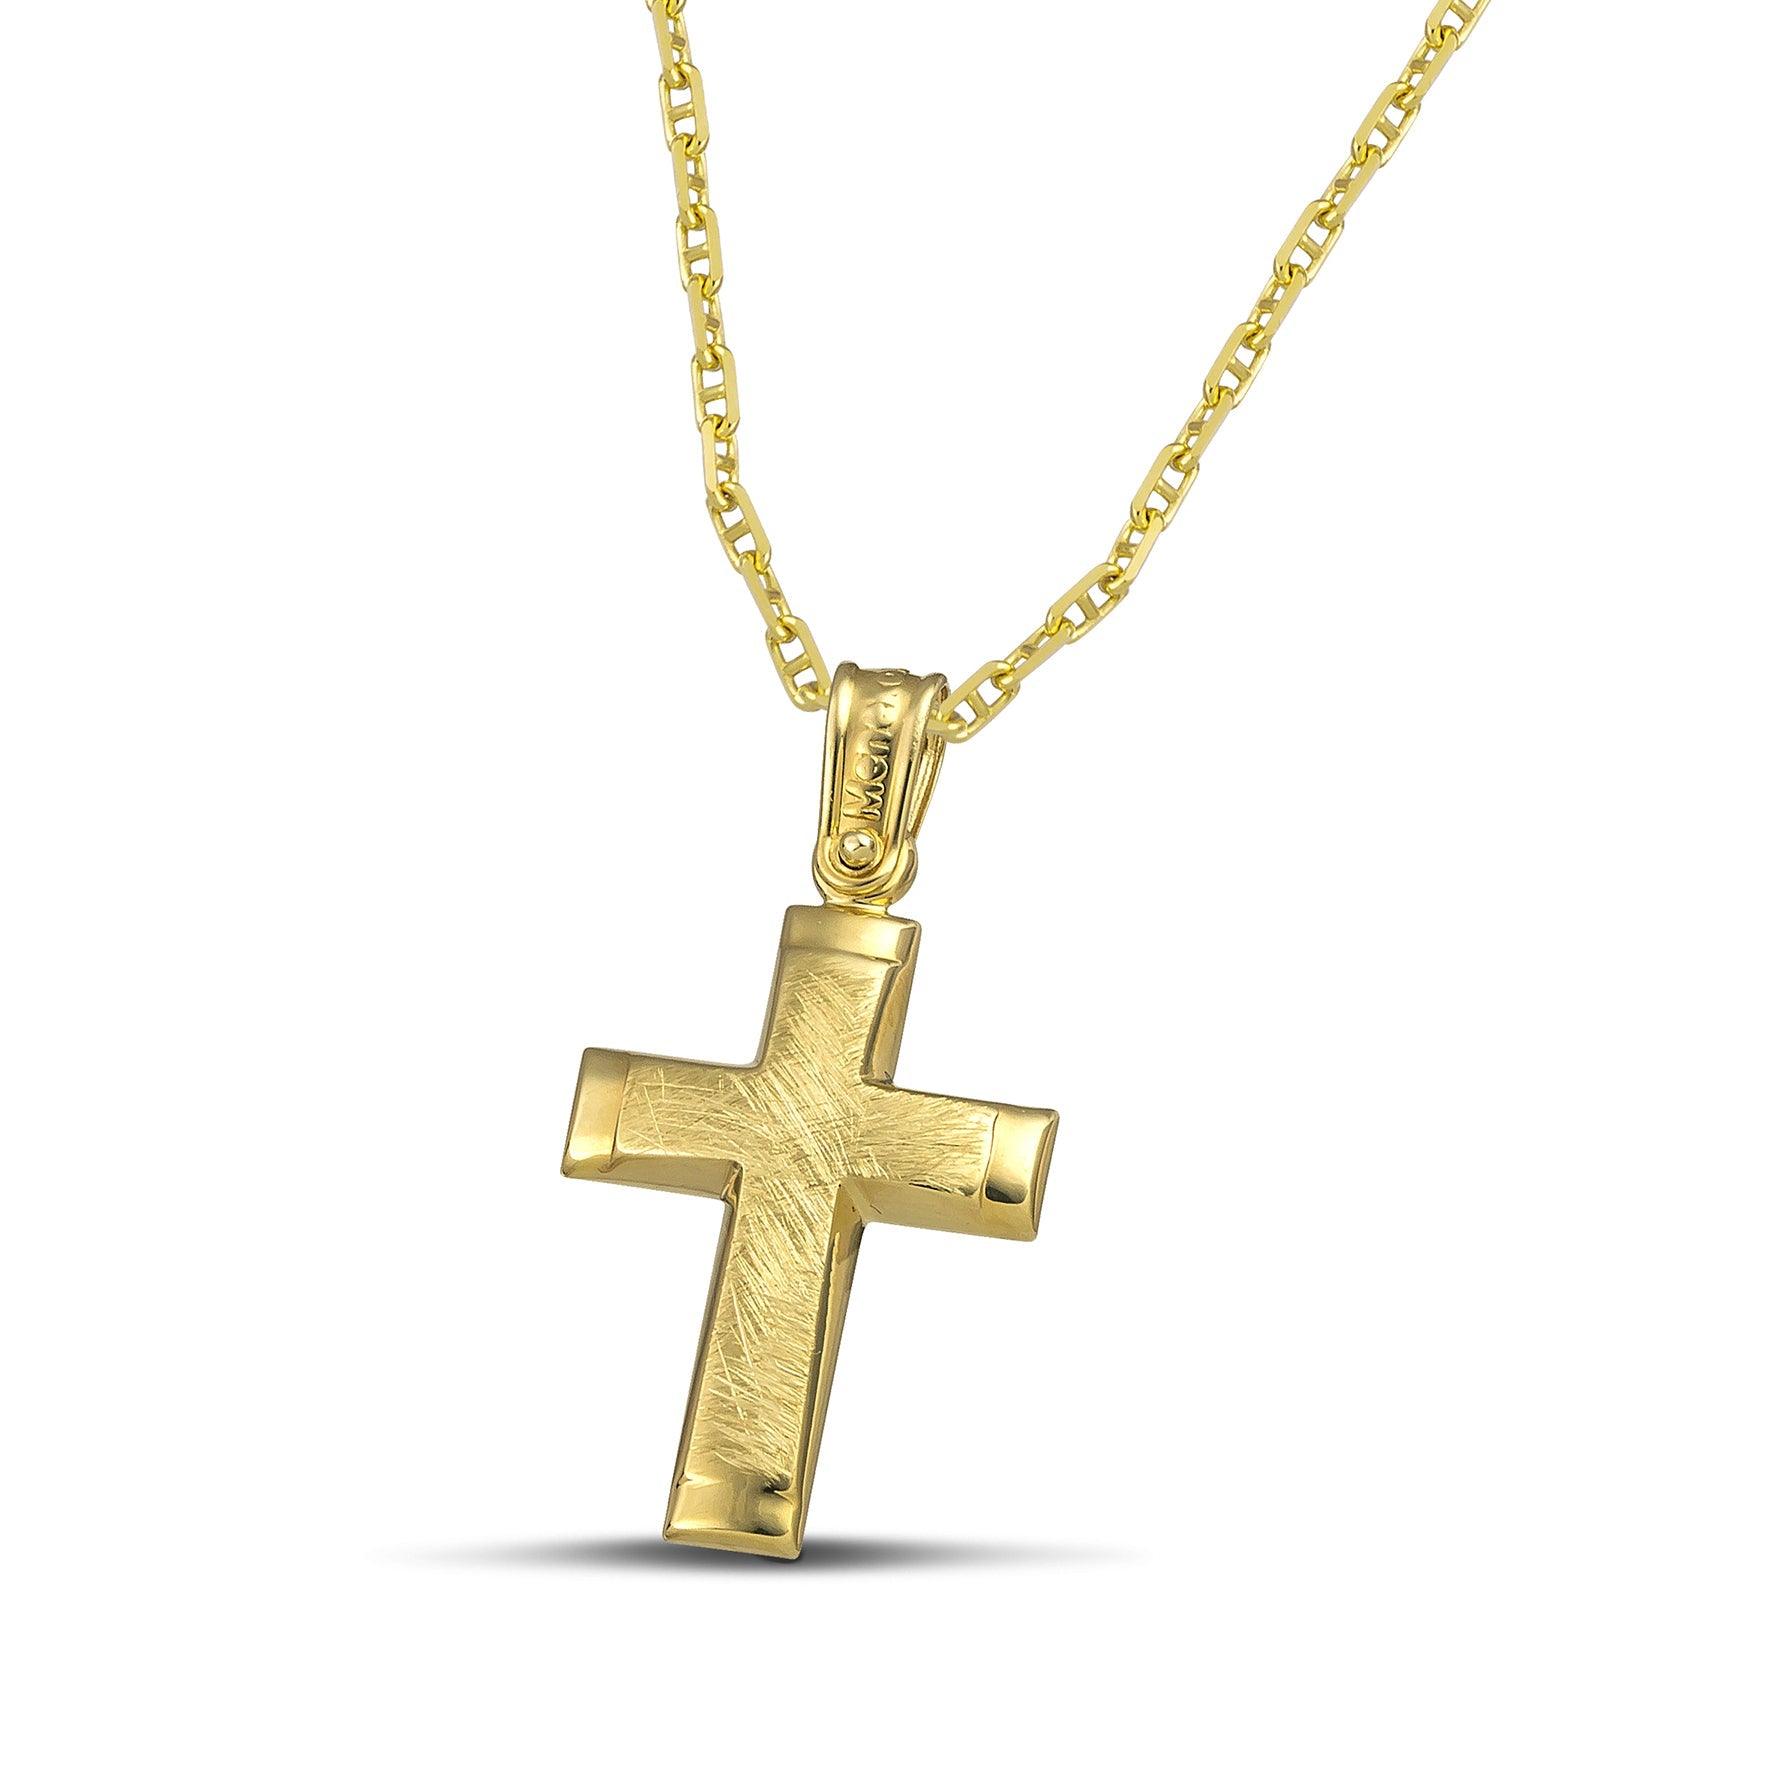 Μίνιμαλ γυναικείος σταυρός σαγρέ από χρυσό Κ14. Χειροποίητη πιστοποιημένη κατασκευή με «Θ» αλυσίδα.